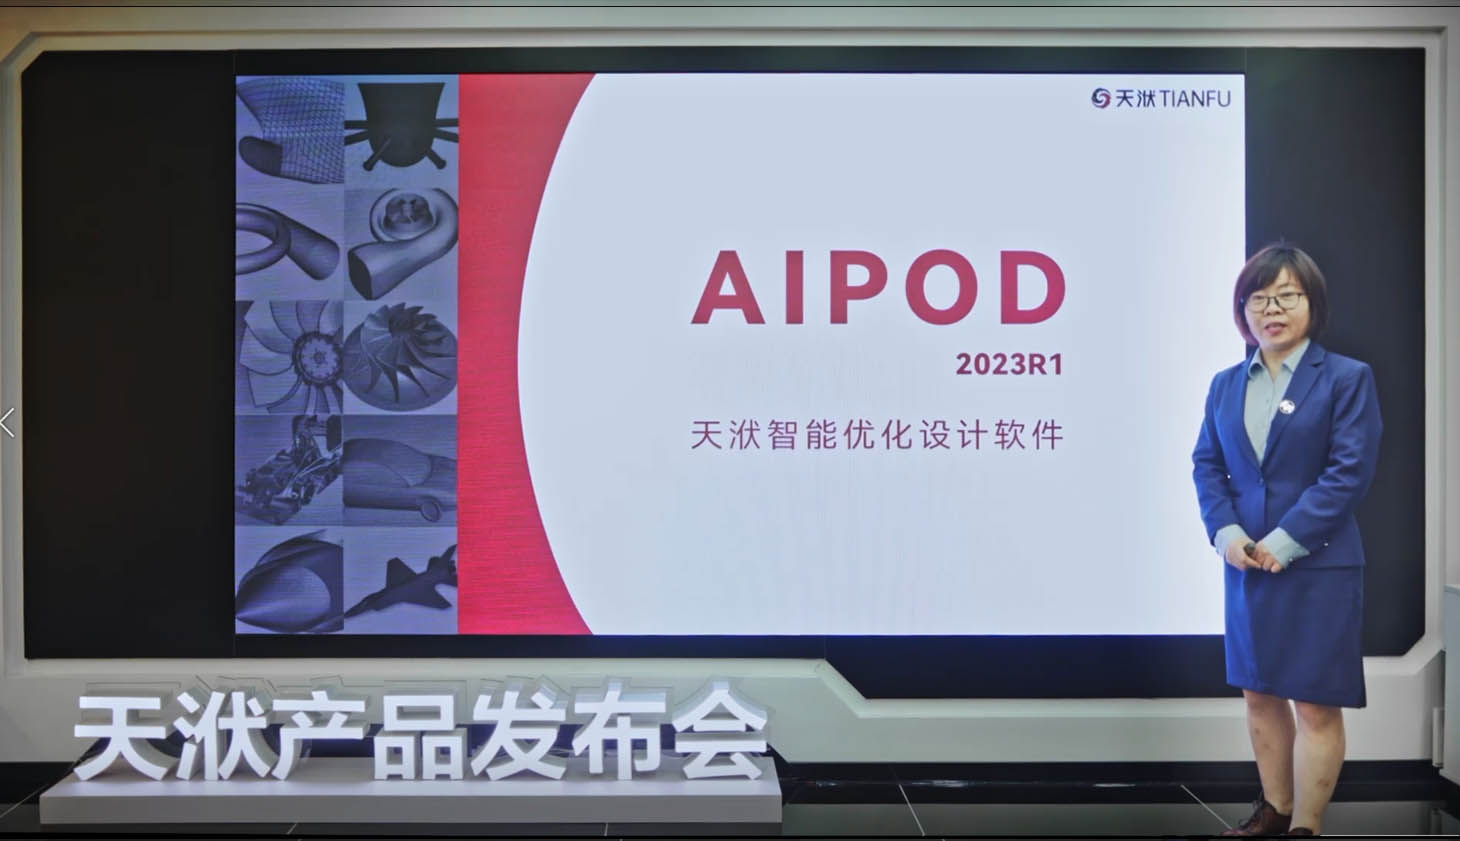 智能优化软件 - AIPOD 2023R1版本新功能详解